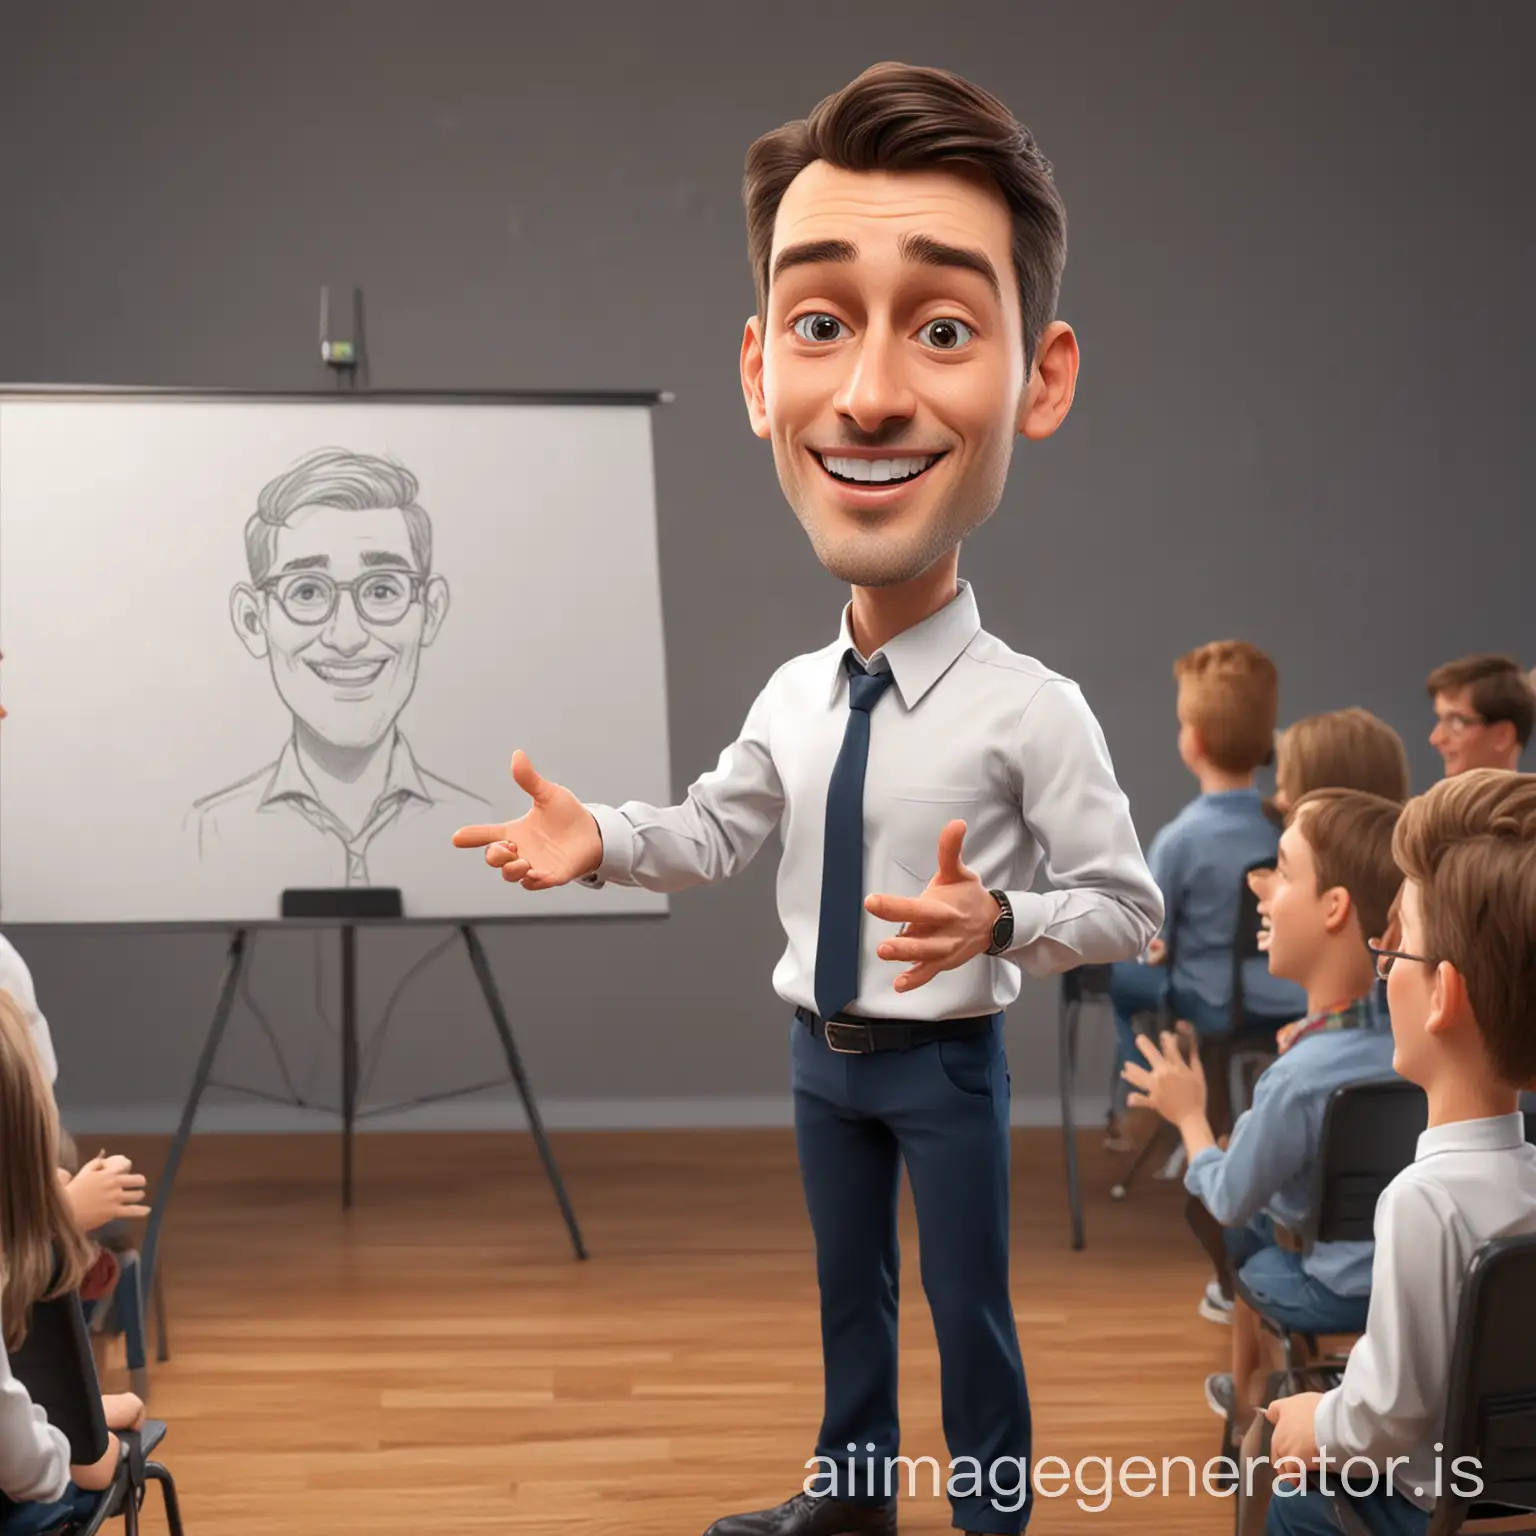 Buatkan saya karikatur 4d ai pria tampan sedang presentasi di depan kelas